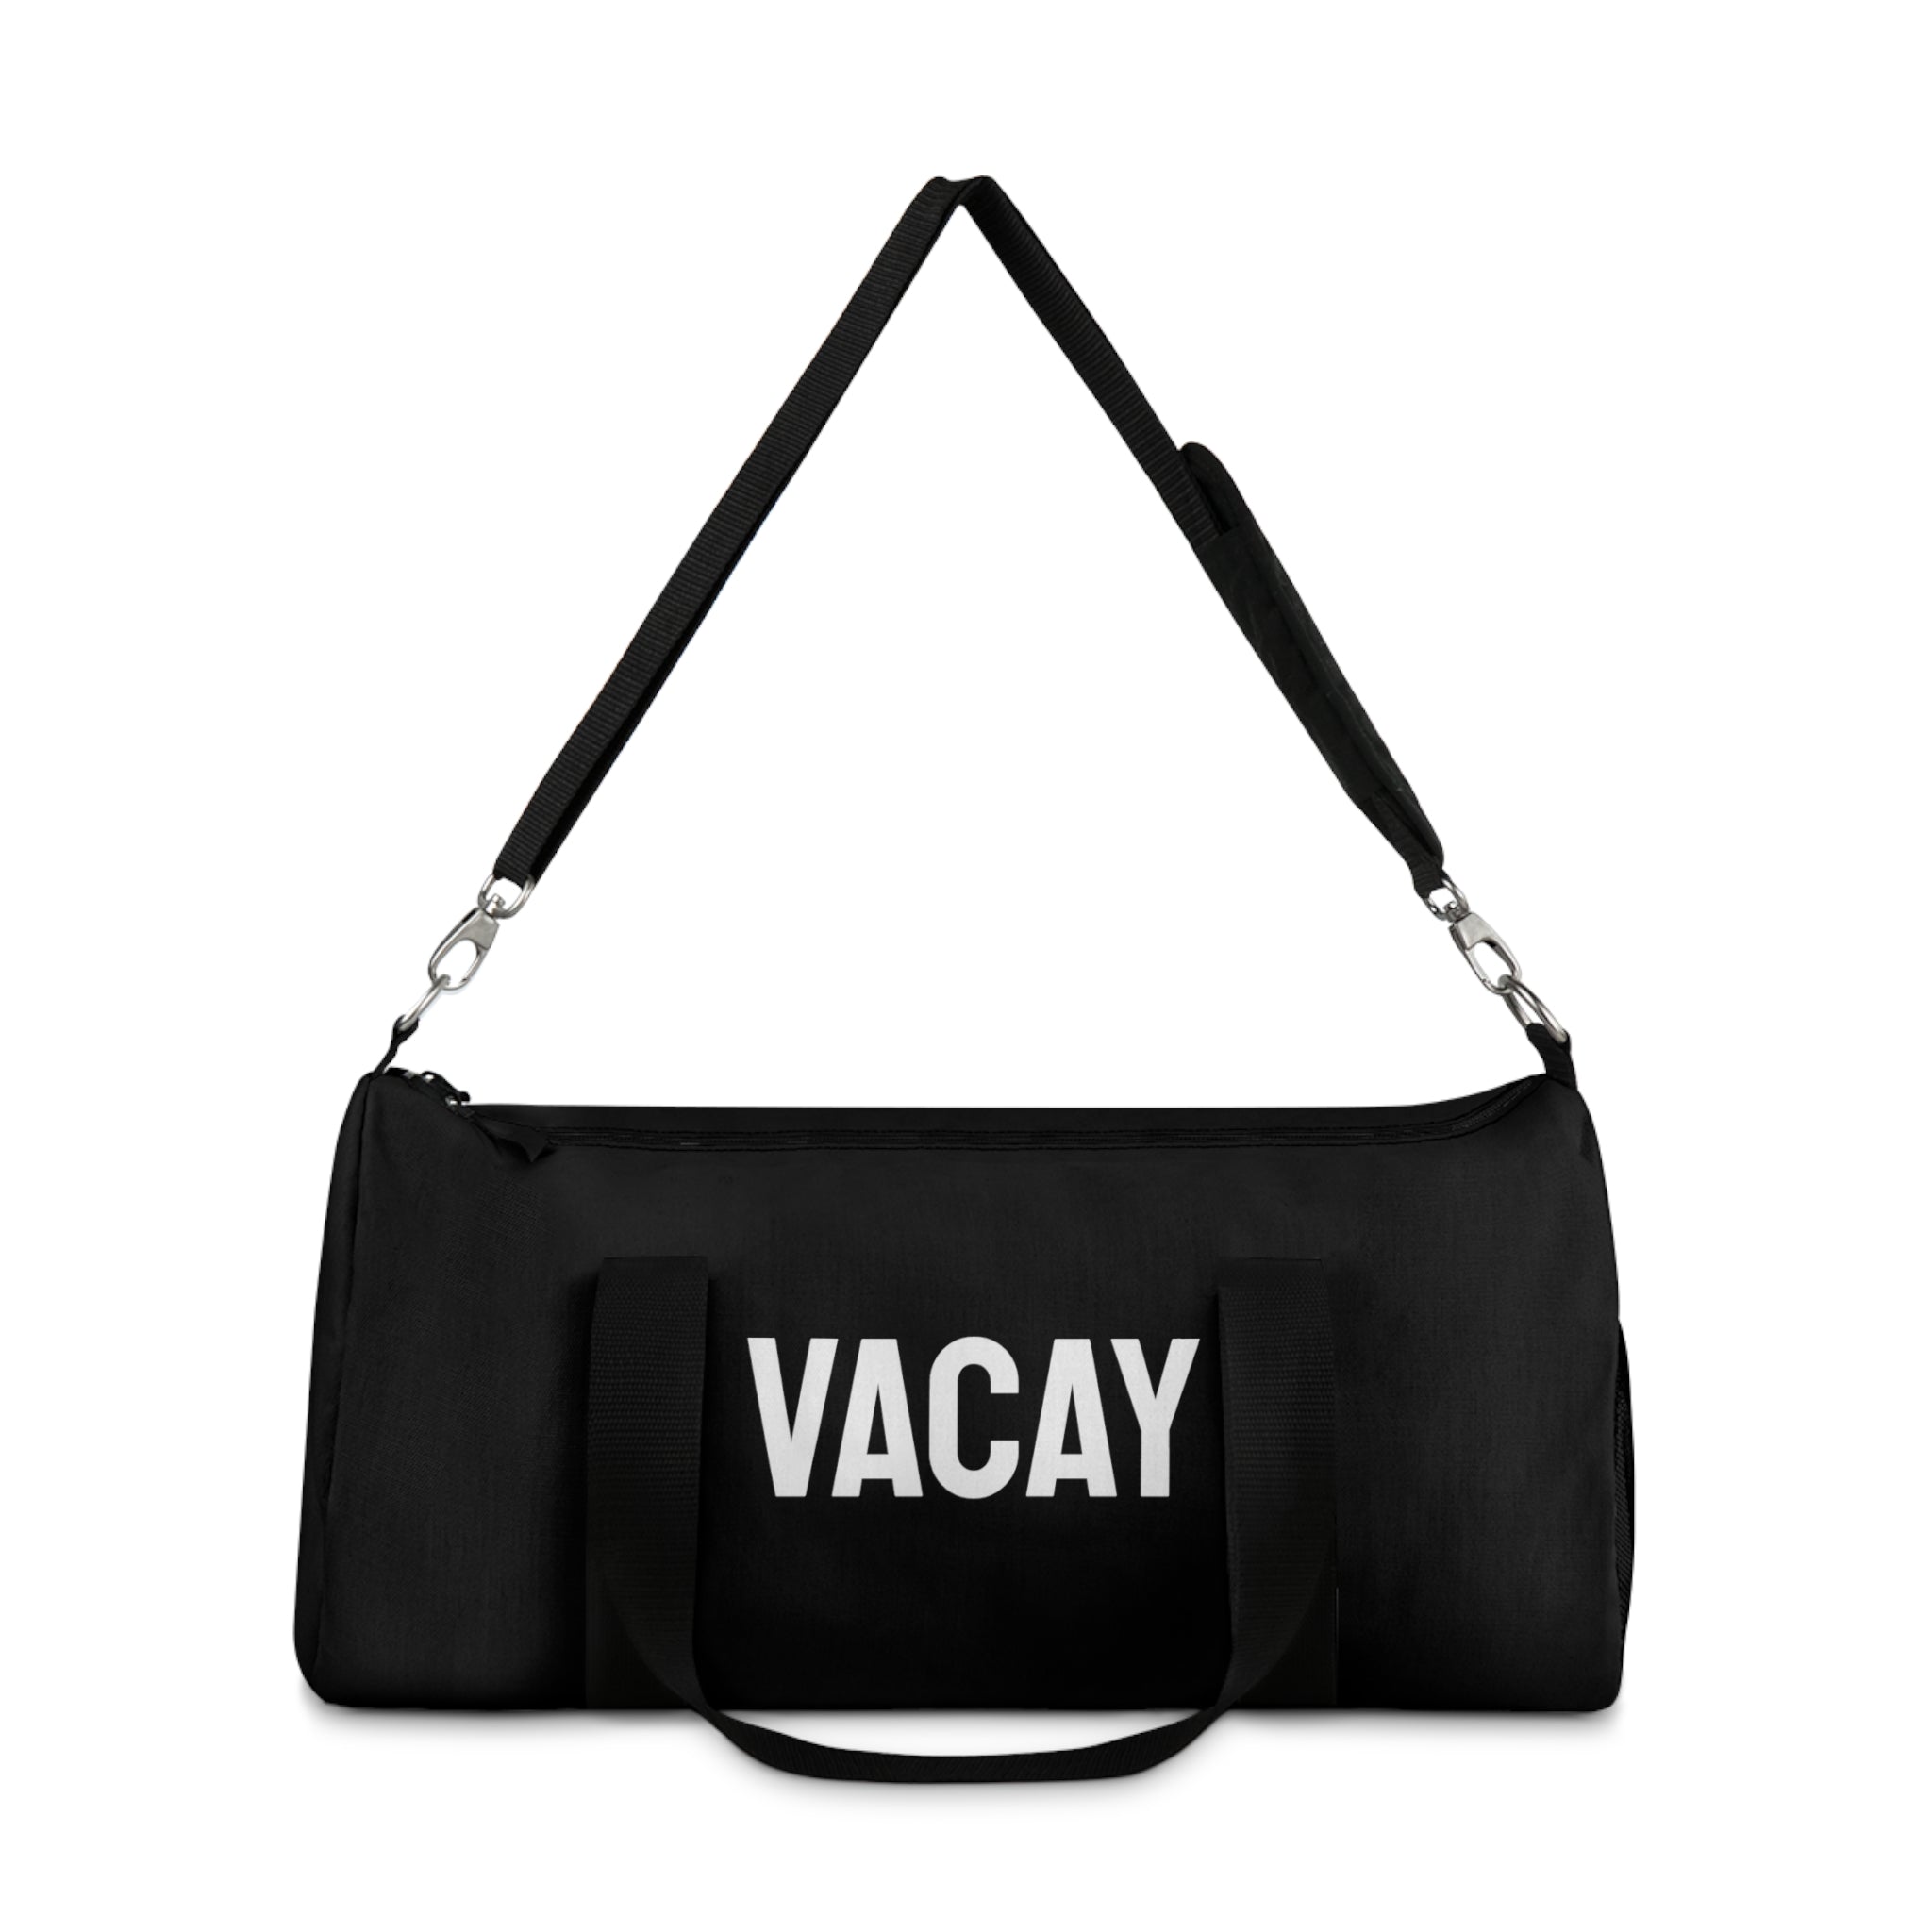 Vacay Duffle Bag (Black)